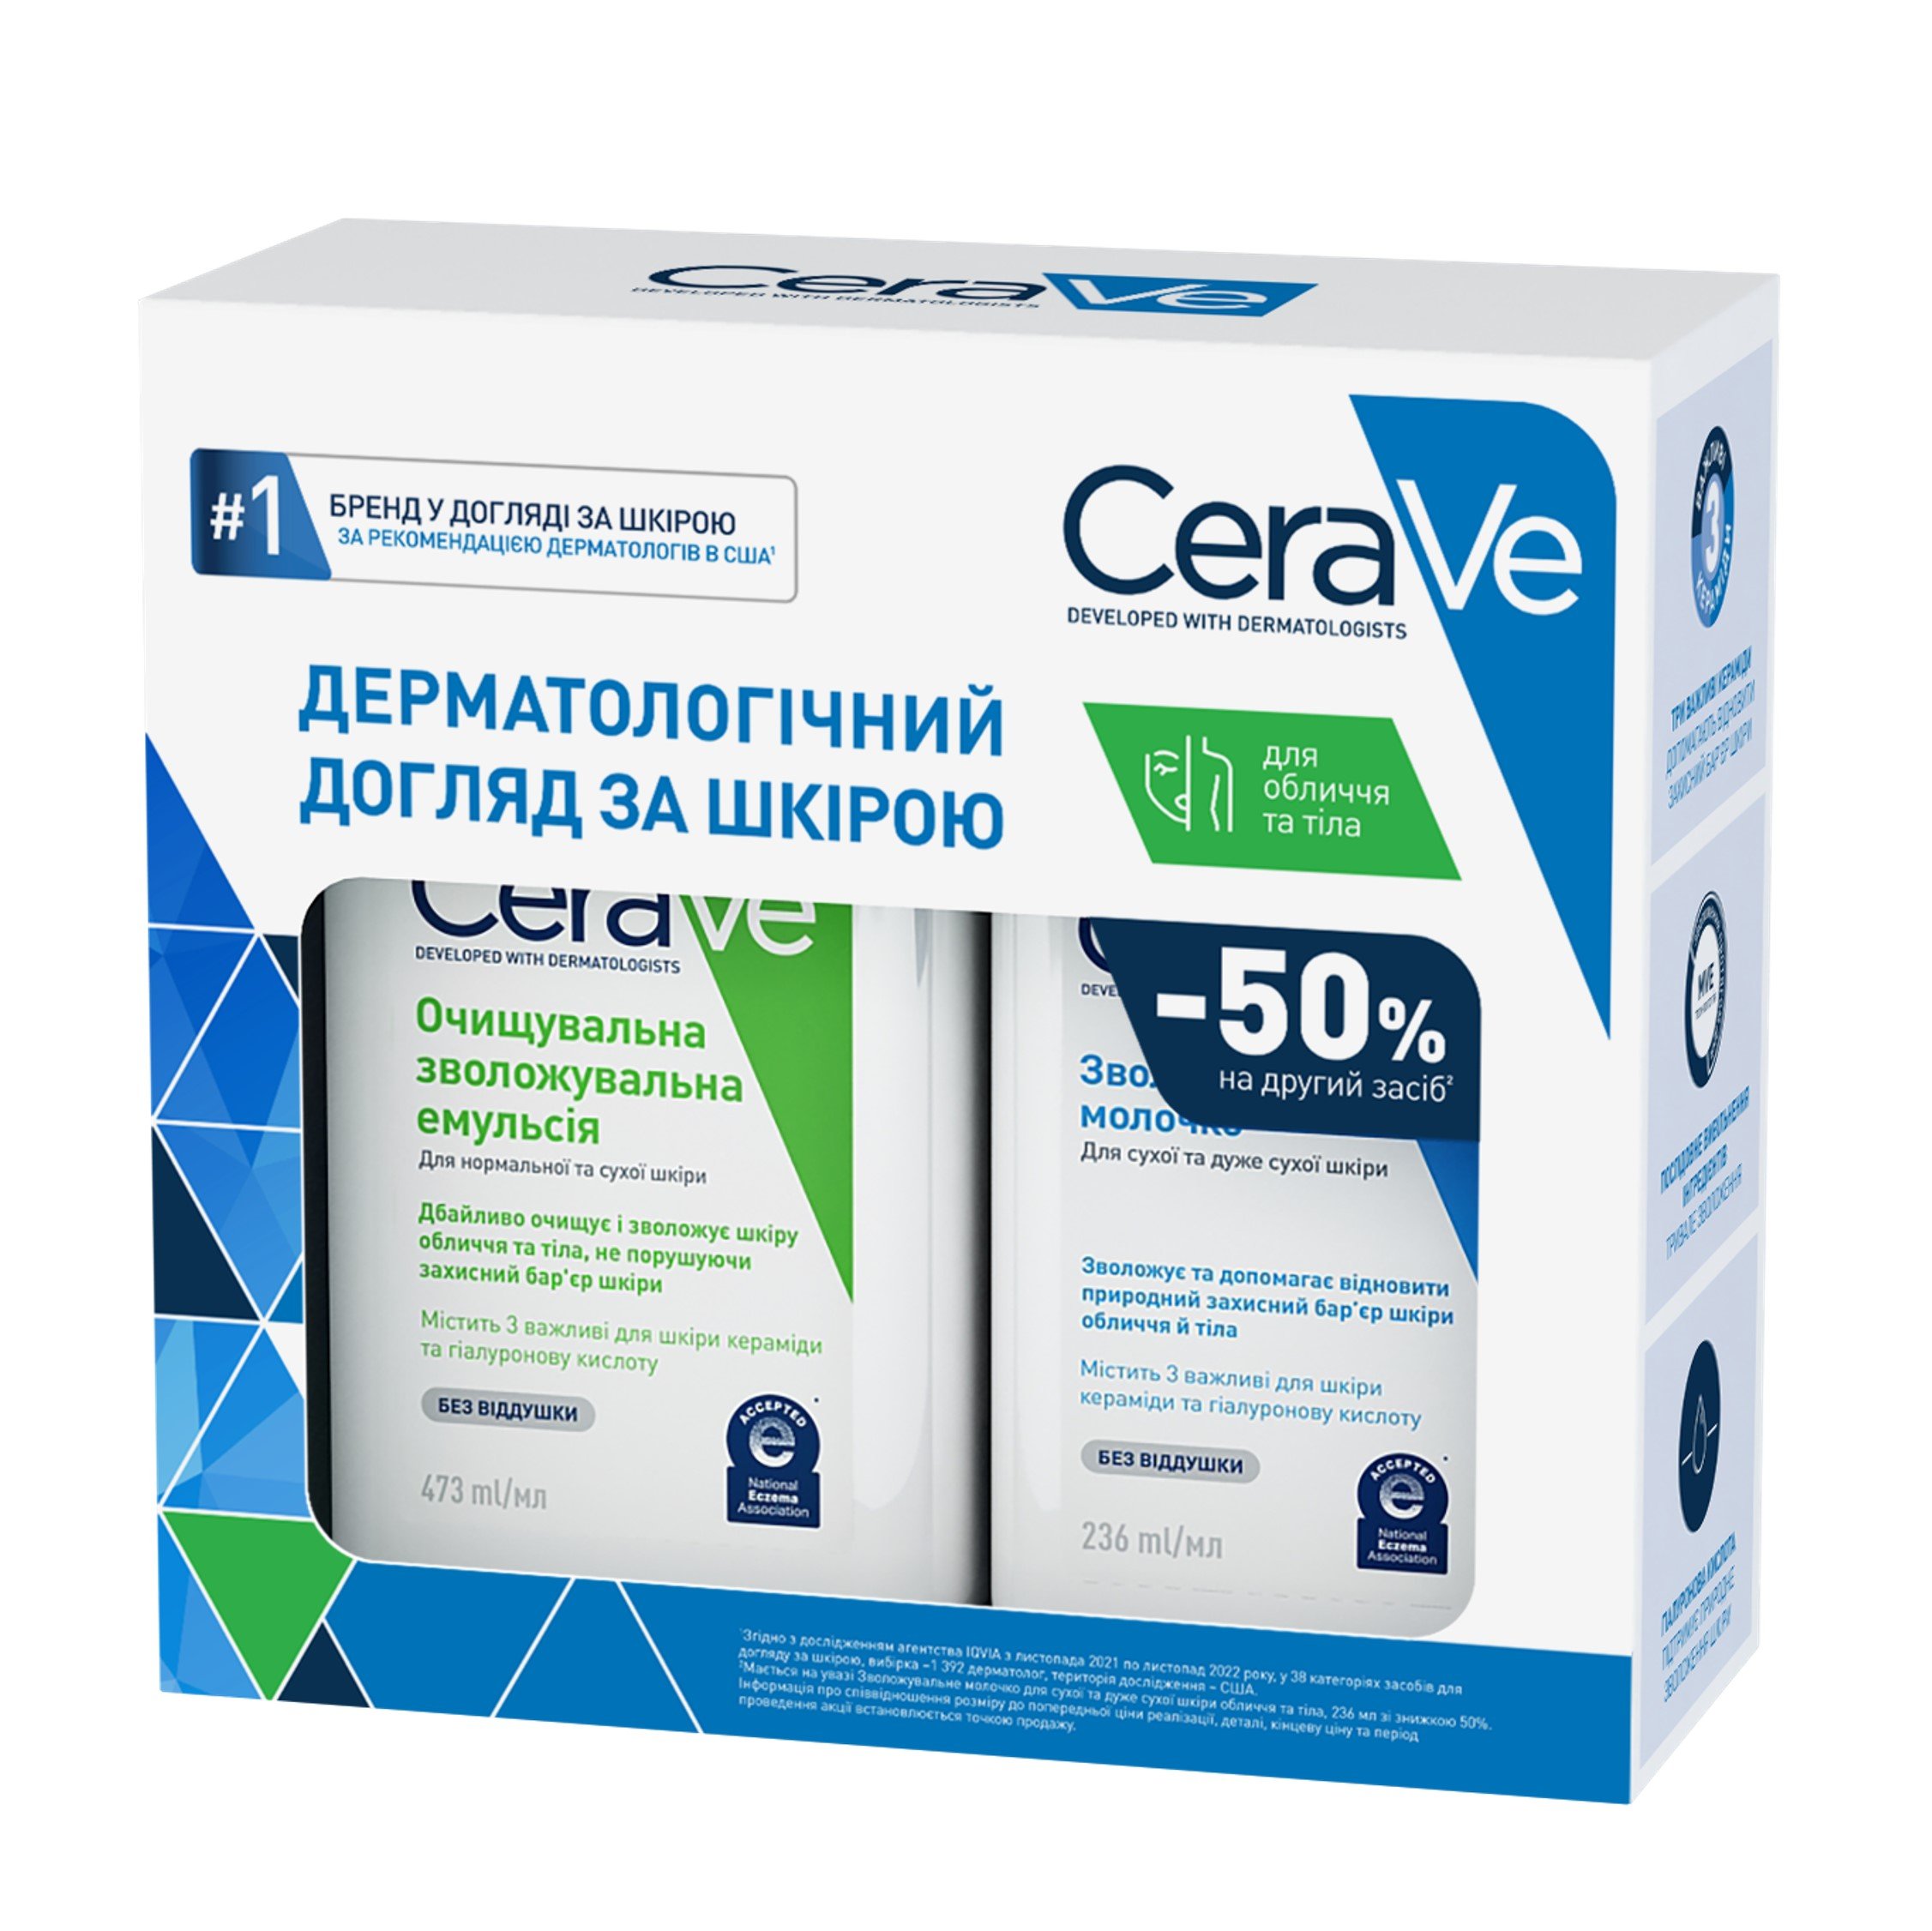 Набір для тіла CeraVe, очищувальна зволожувальна емульсія 47З мл + зволожувальне молочко для сухої шкіри 236 мл - фото 2